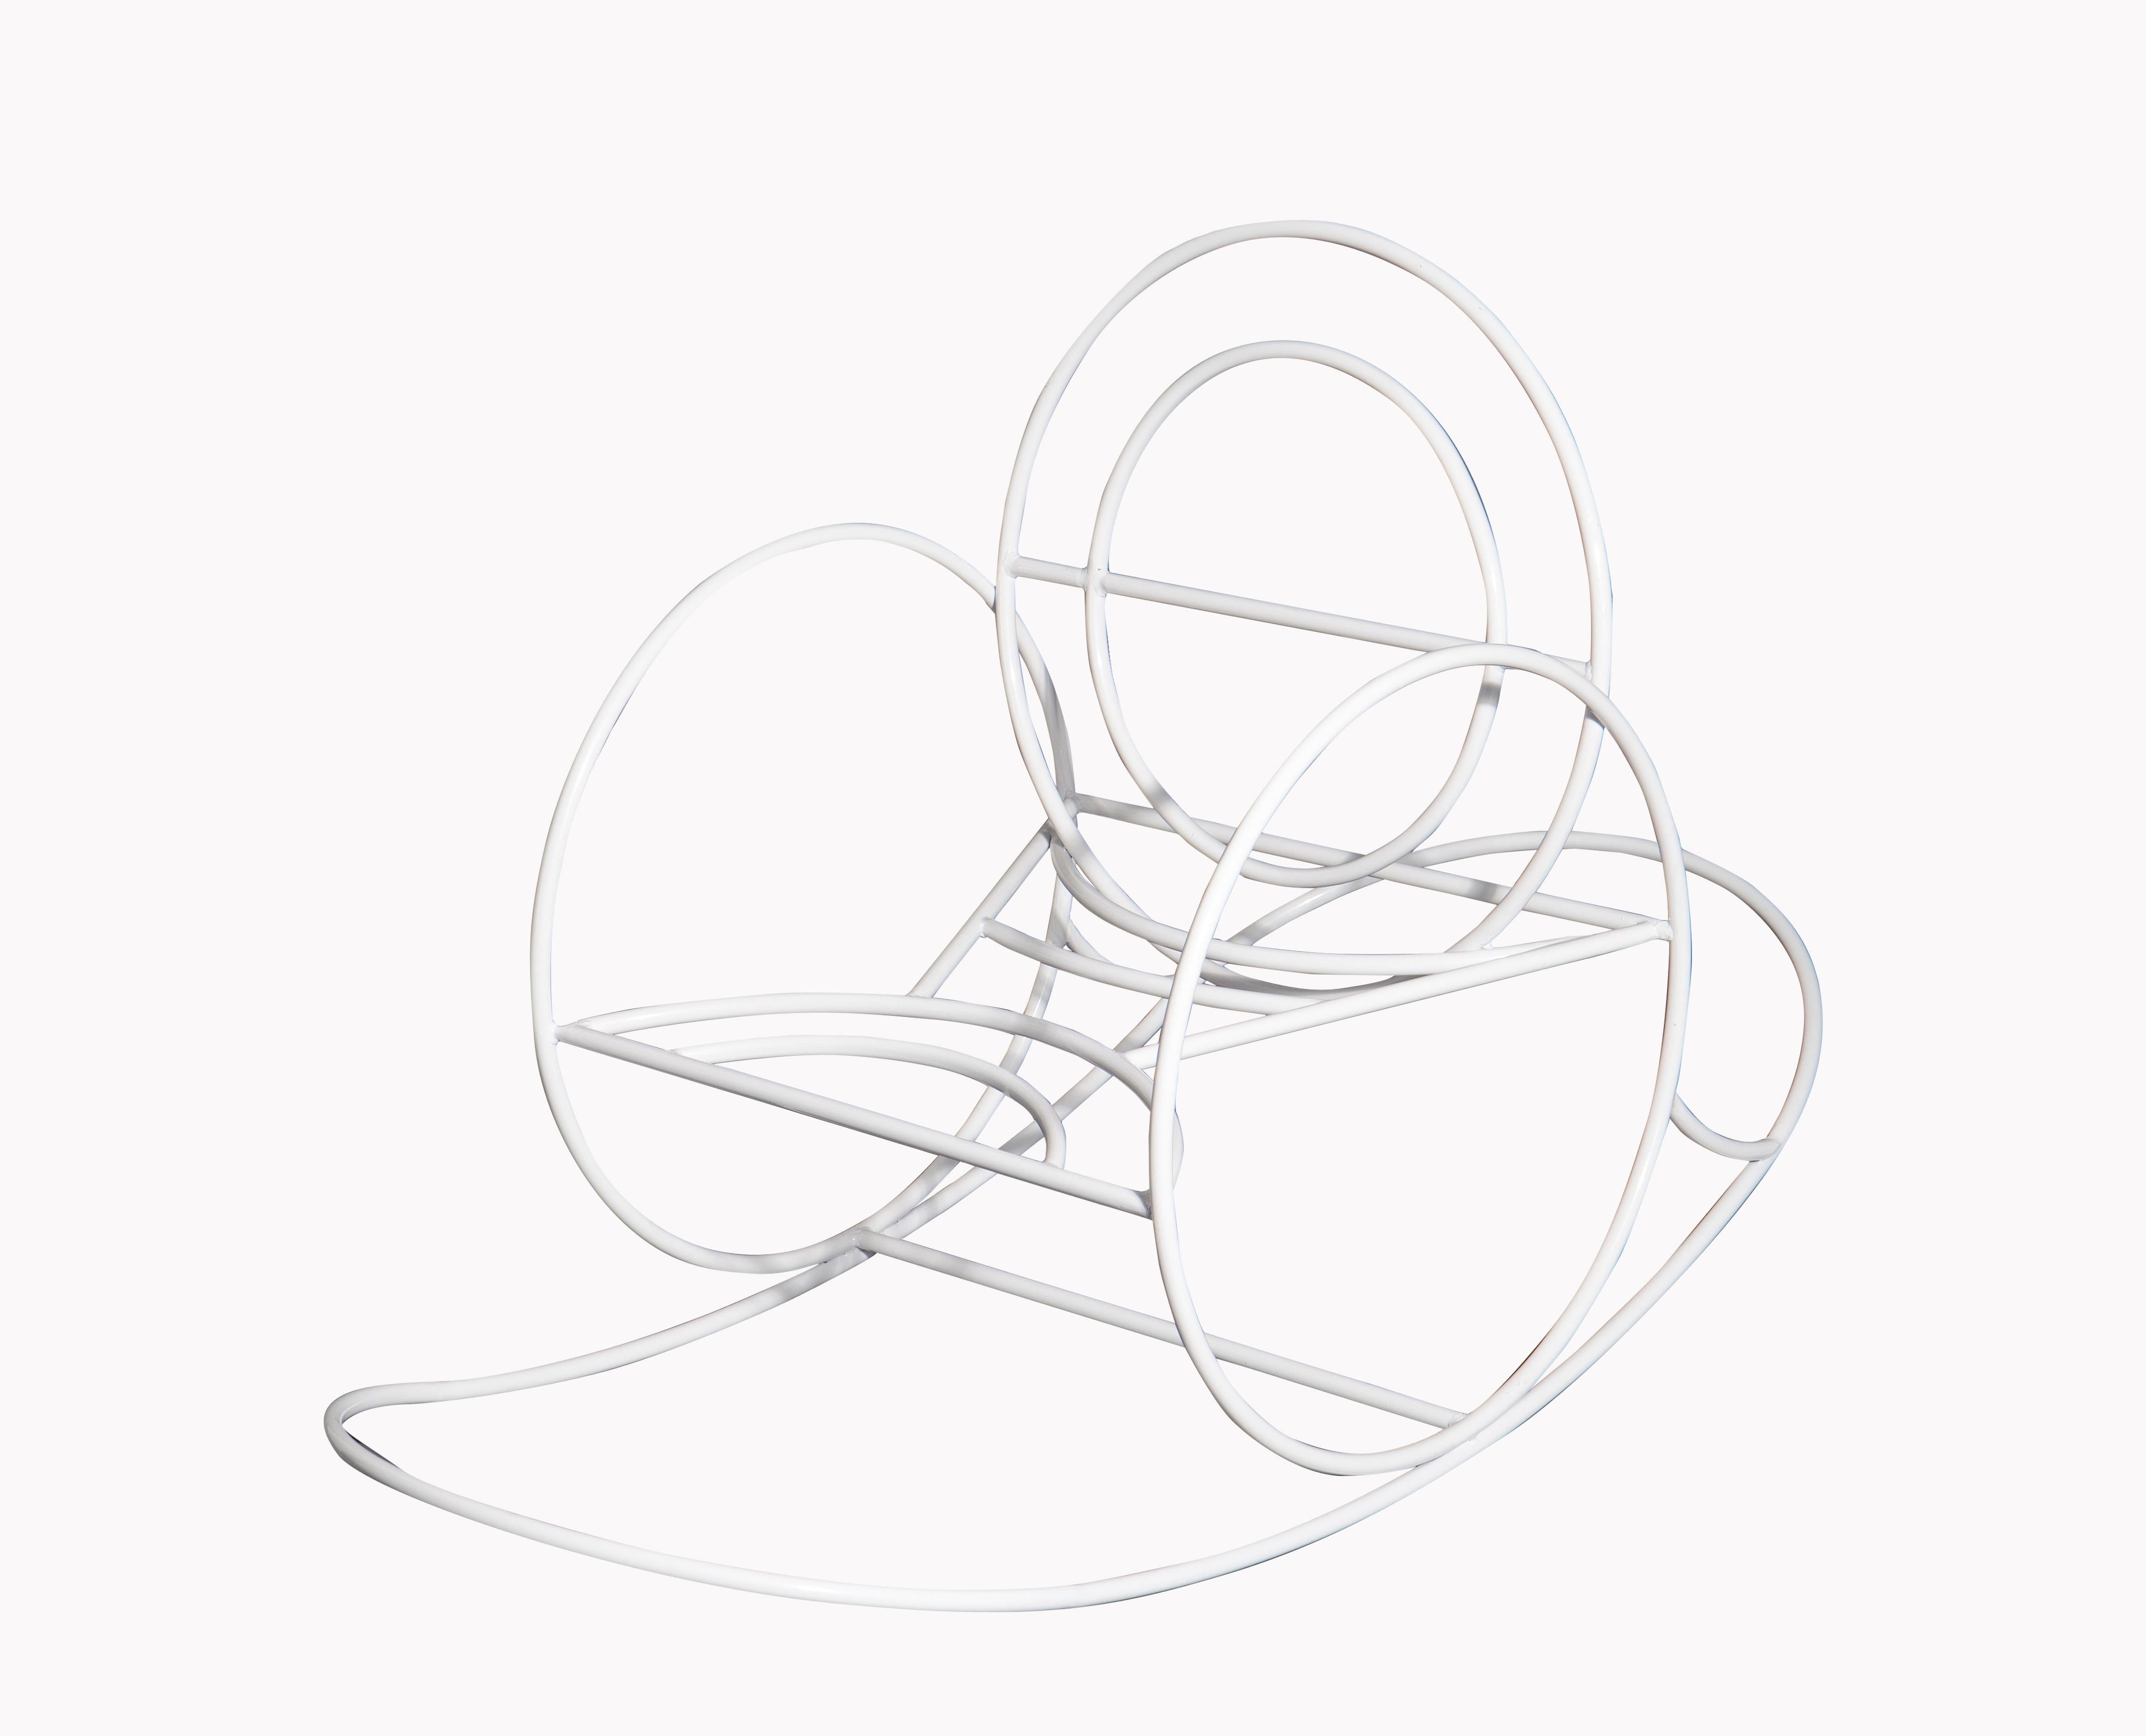 Handgefertigter, geschwungener Schaukelstuhl aus Metall, entworfen vom spanischen Designer Angel Mombiedro. Er besteht aus einer Metallstruktur und einem orangefarbenen Sitz aus synthetischem Samt.  

Ángel Mombiedro
Mombiedros Werk speist sich aus